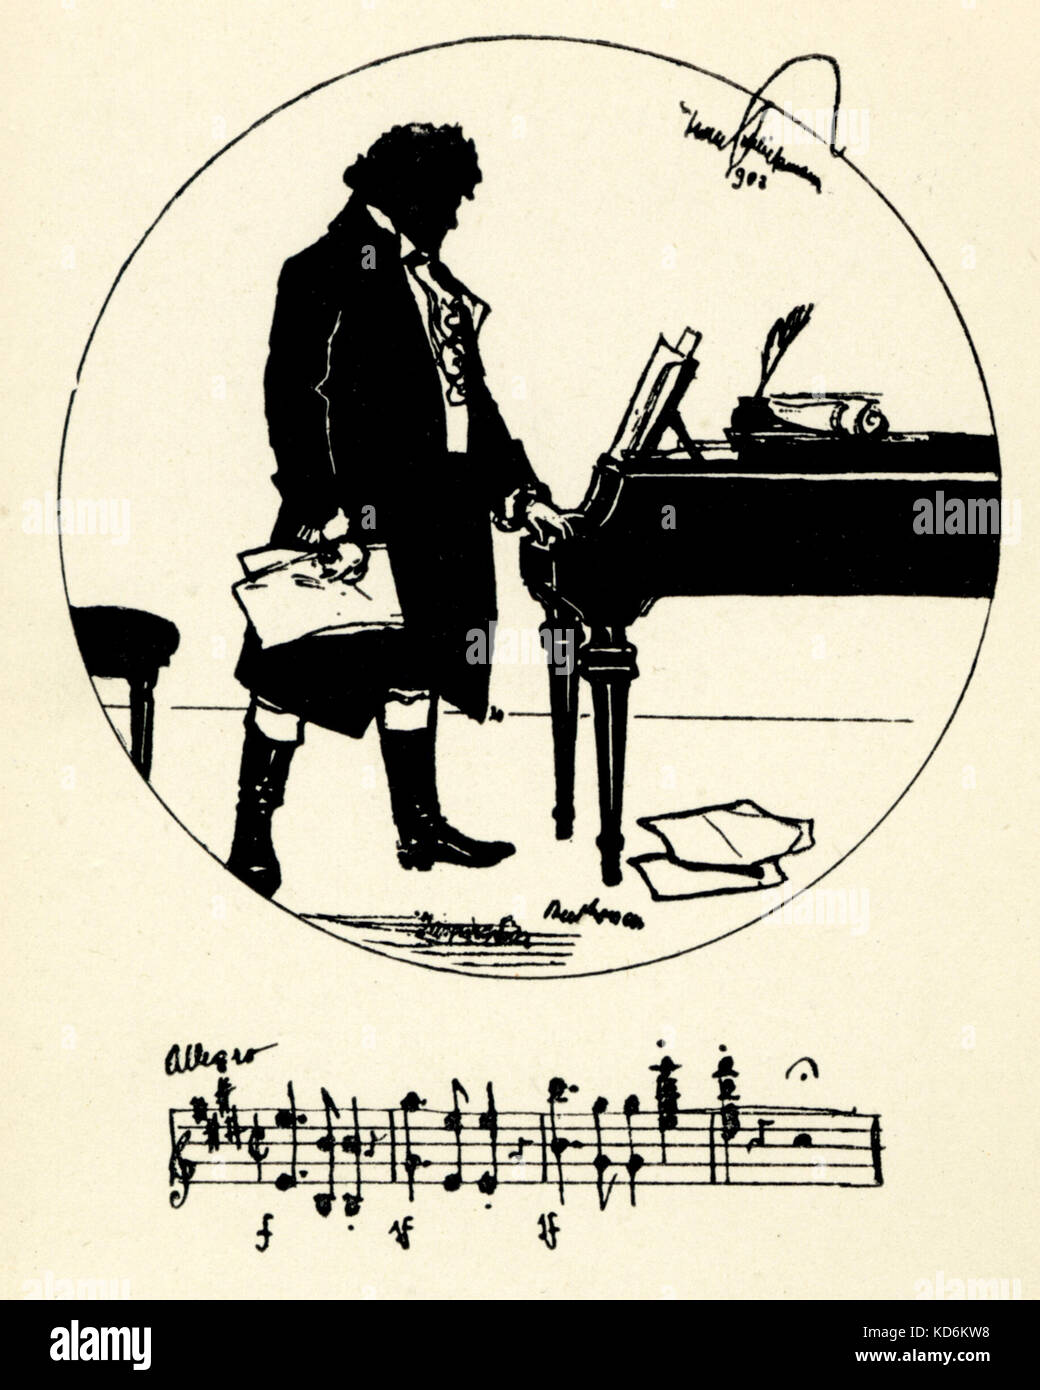 Ludwig van Beethoven stehen mit Hand auf Tastatur, halten. Silhouette von Hans Schliessmann (1852 - 1920). Eingangswellenträger. Musik Personal. Deutsche Komponist, 1770-1827. Postkarte Stockfoto